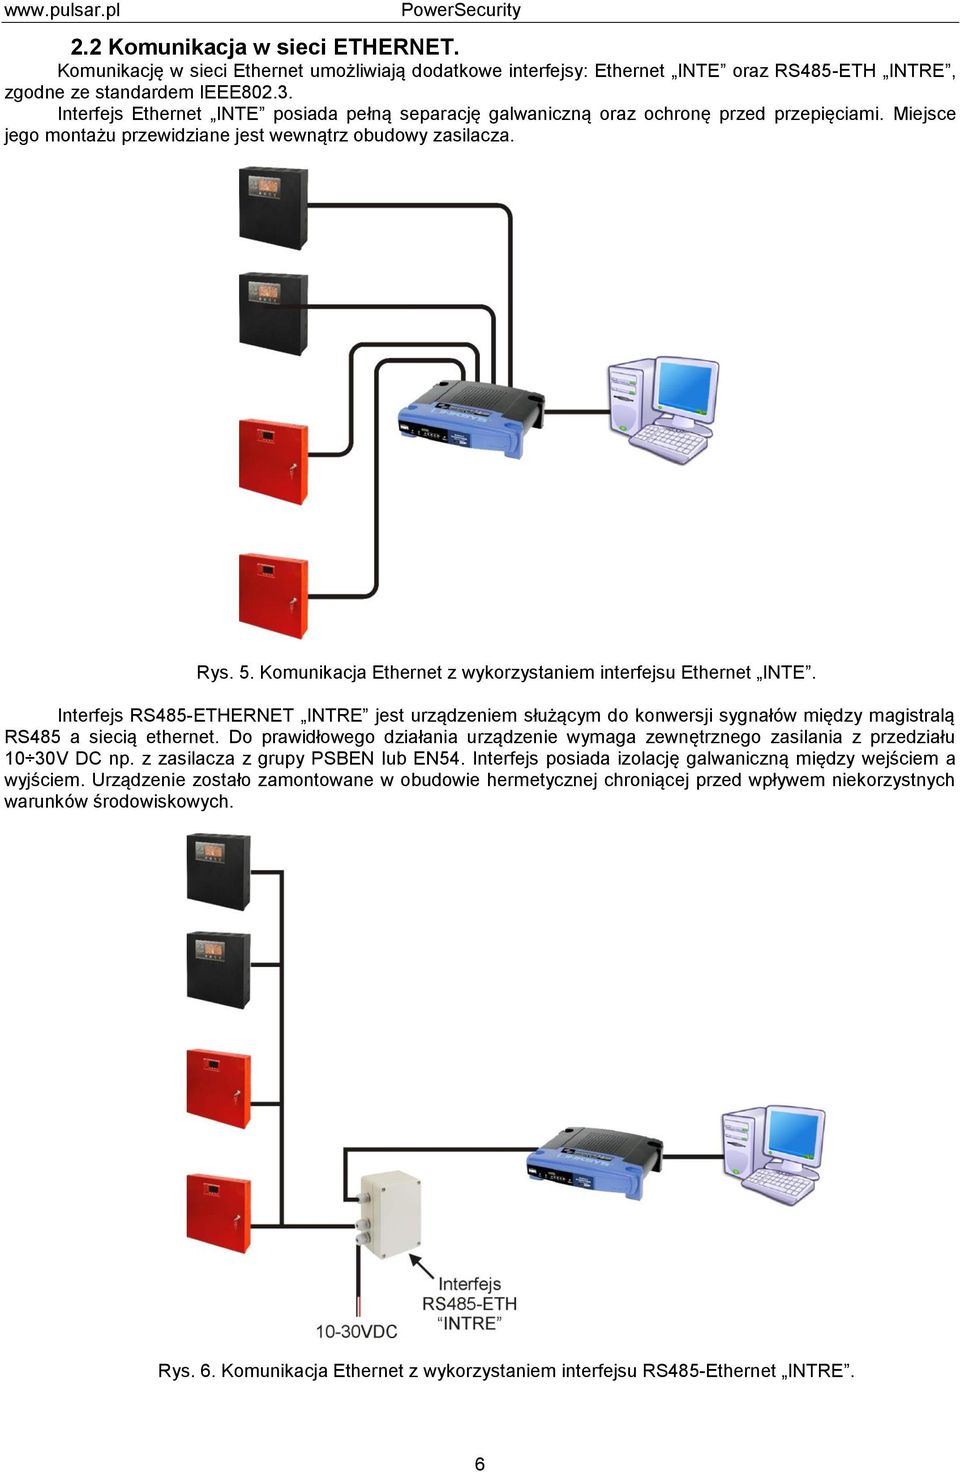 Komunikacja Ethernet z wykorzystaniem interfejsu Ethernet INTE. Interfejs RS485-ETHERNET INTRE jest urządzeniem służącym do konwersji sygnałów między magistralą RS485 a siecią ethernet.